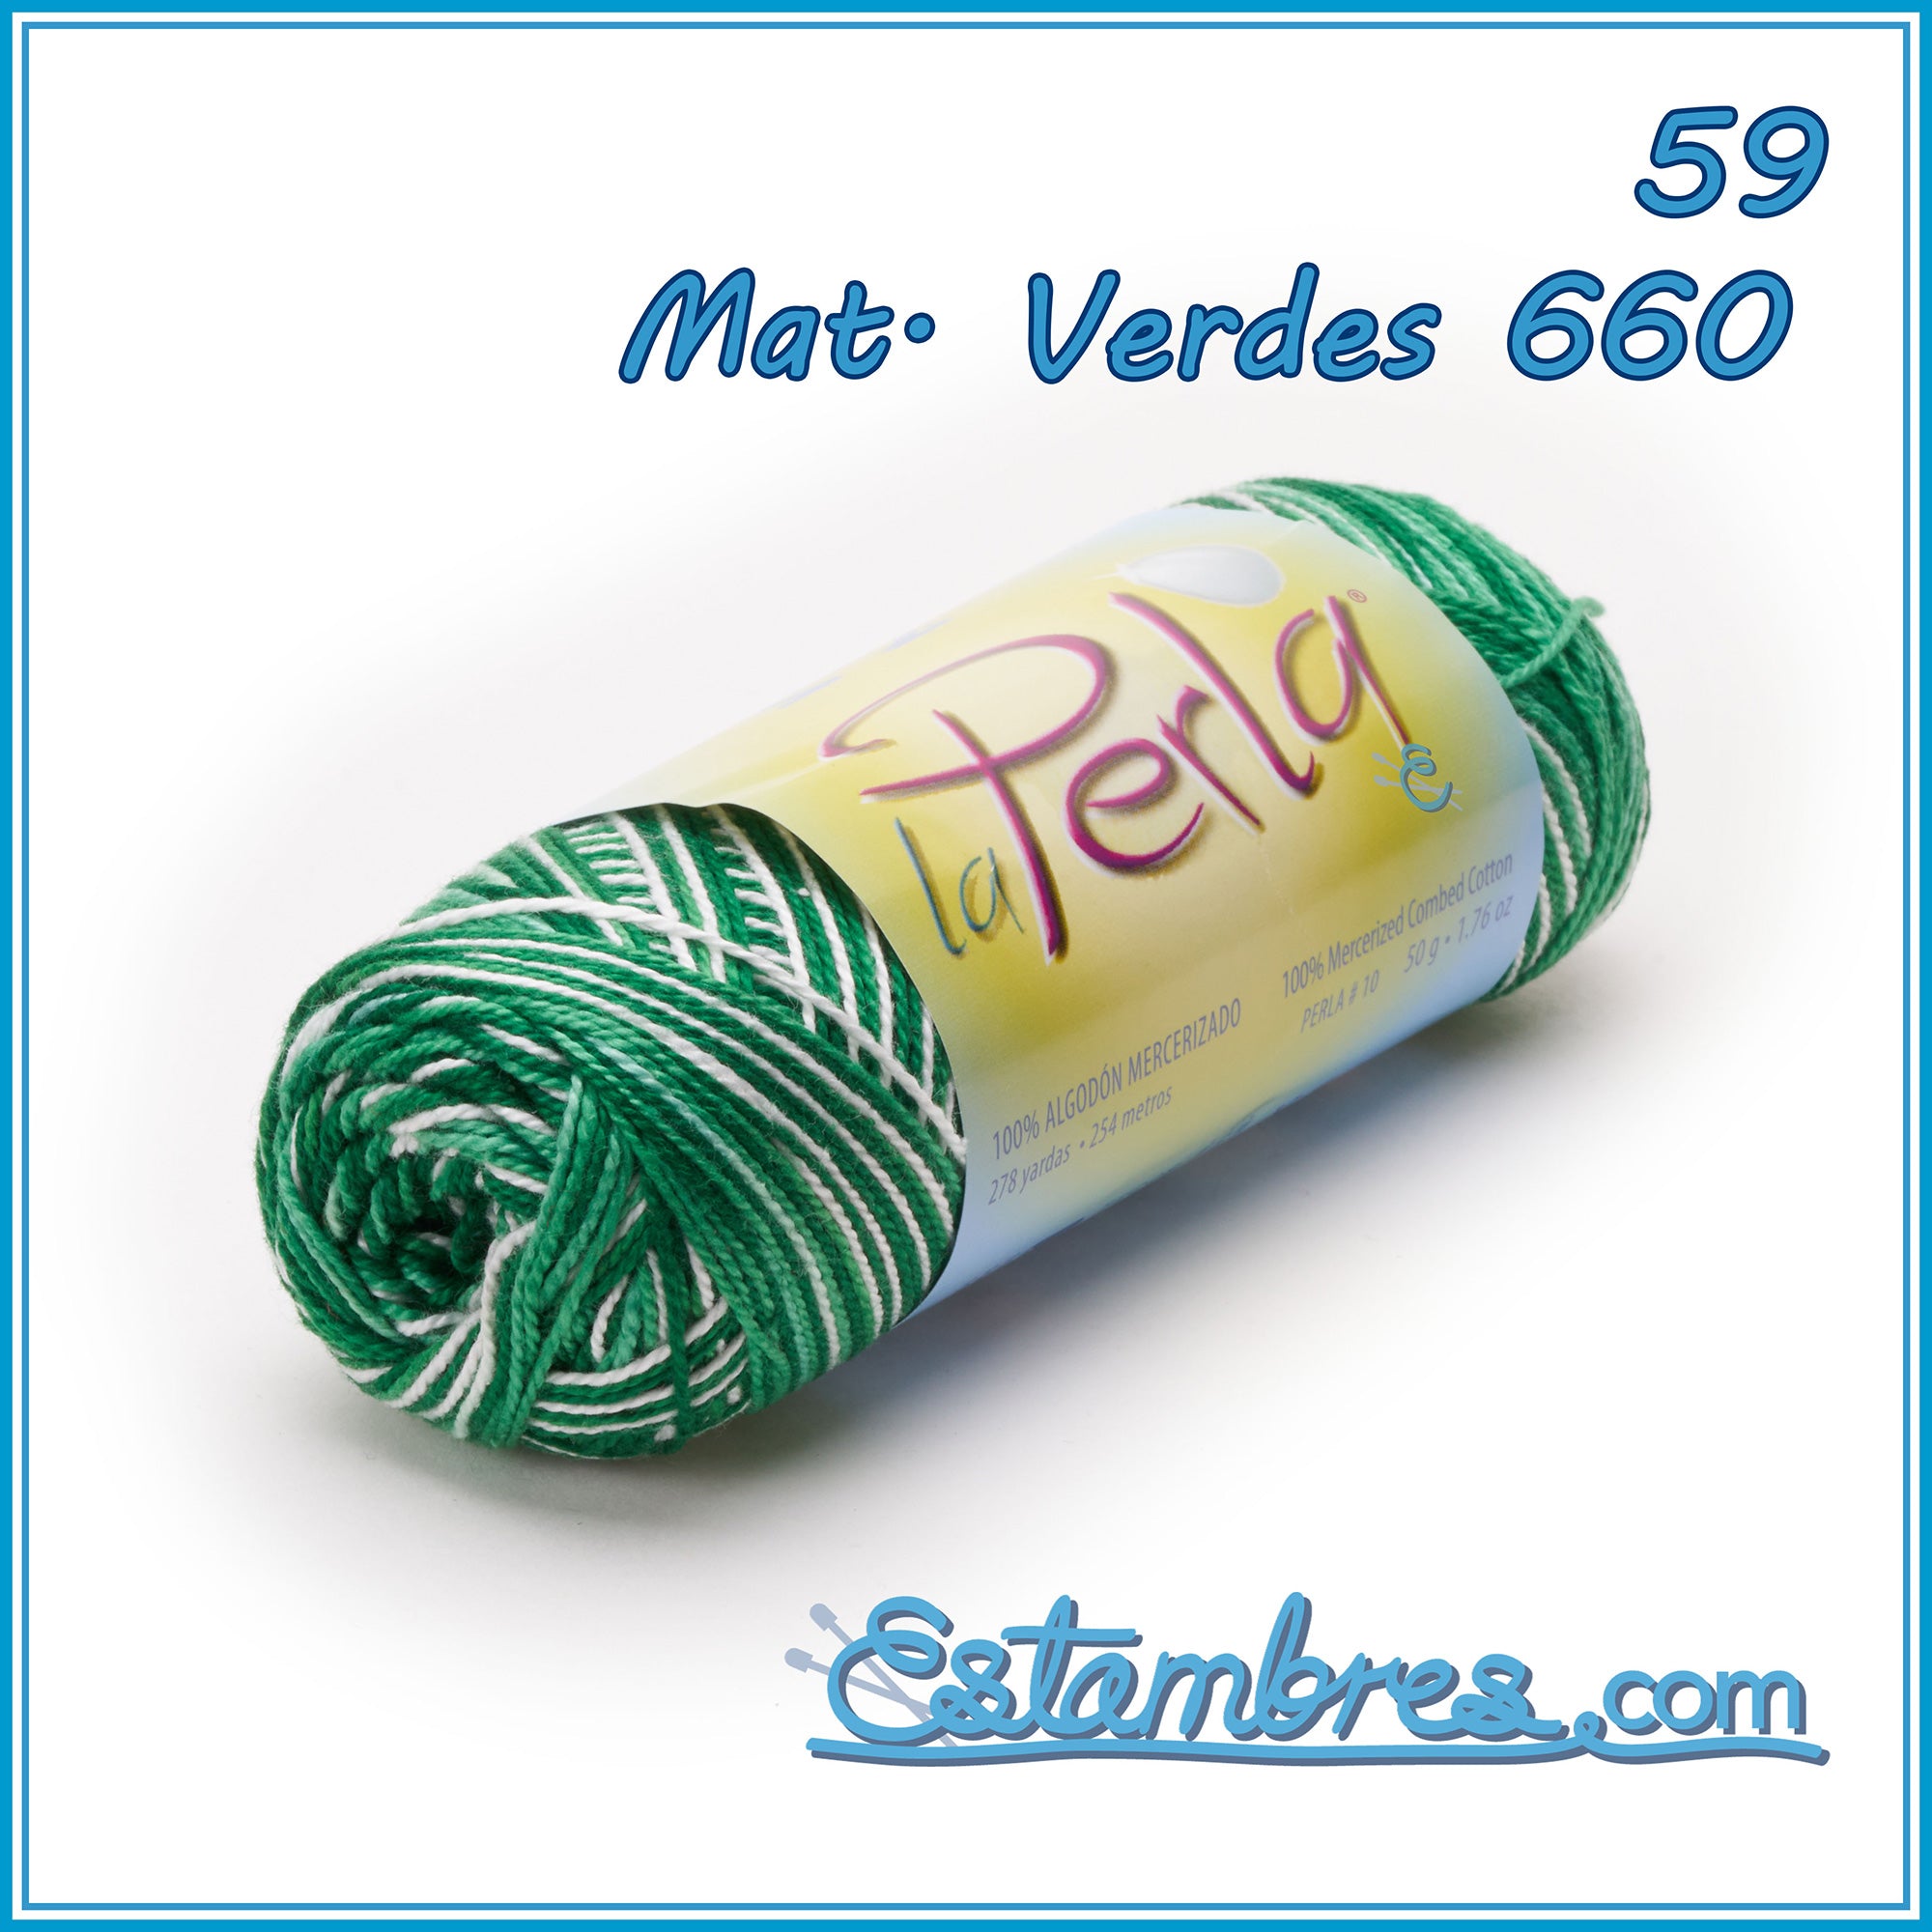 LA PERLA YARN #613 AMARILLO CLARO 50g – MilArt Marroquin